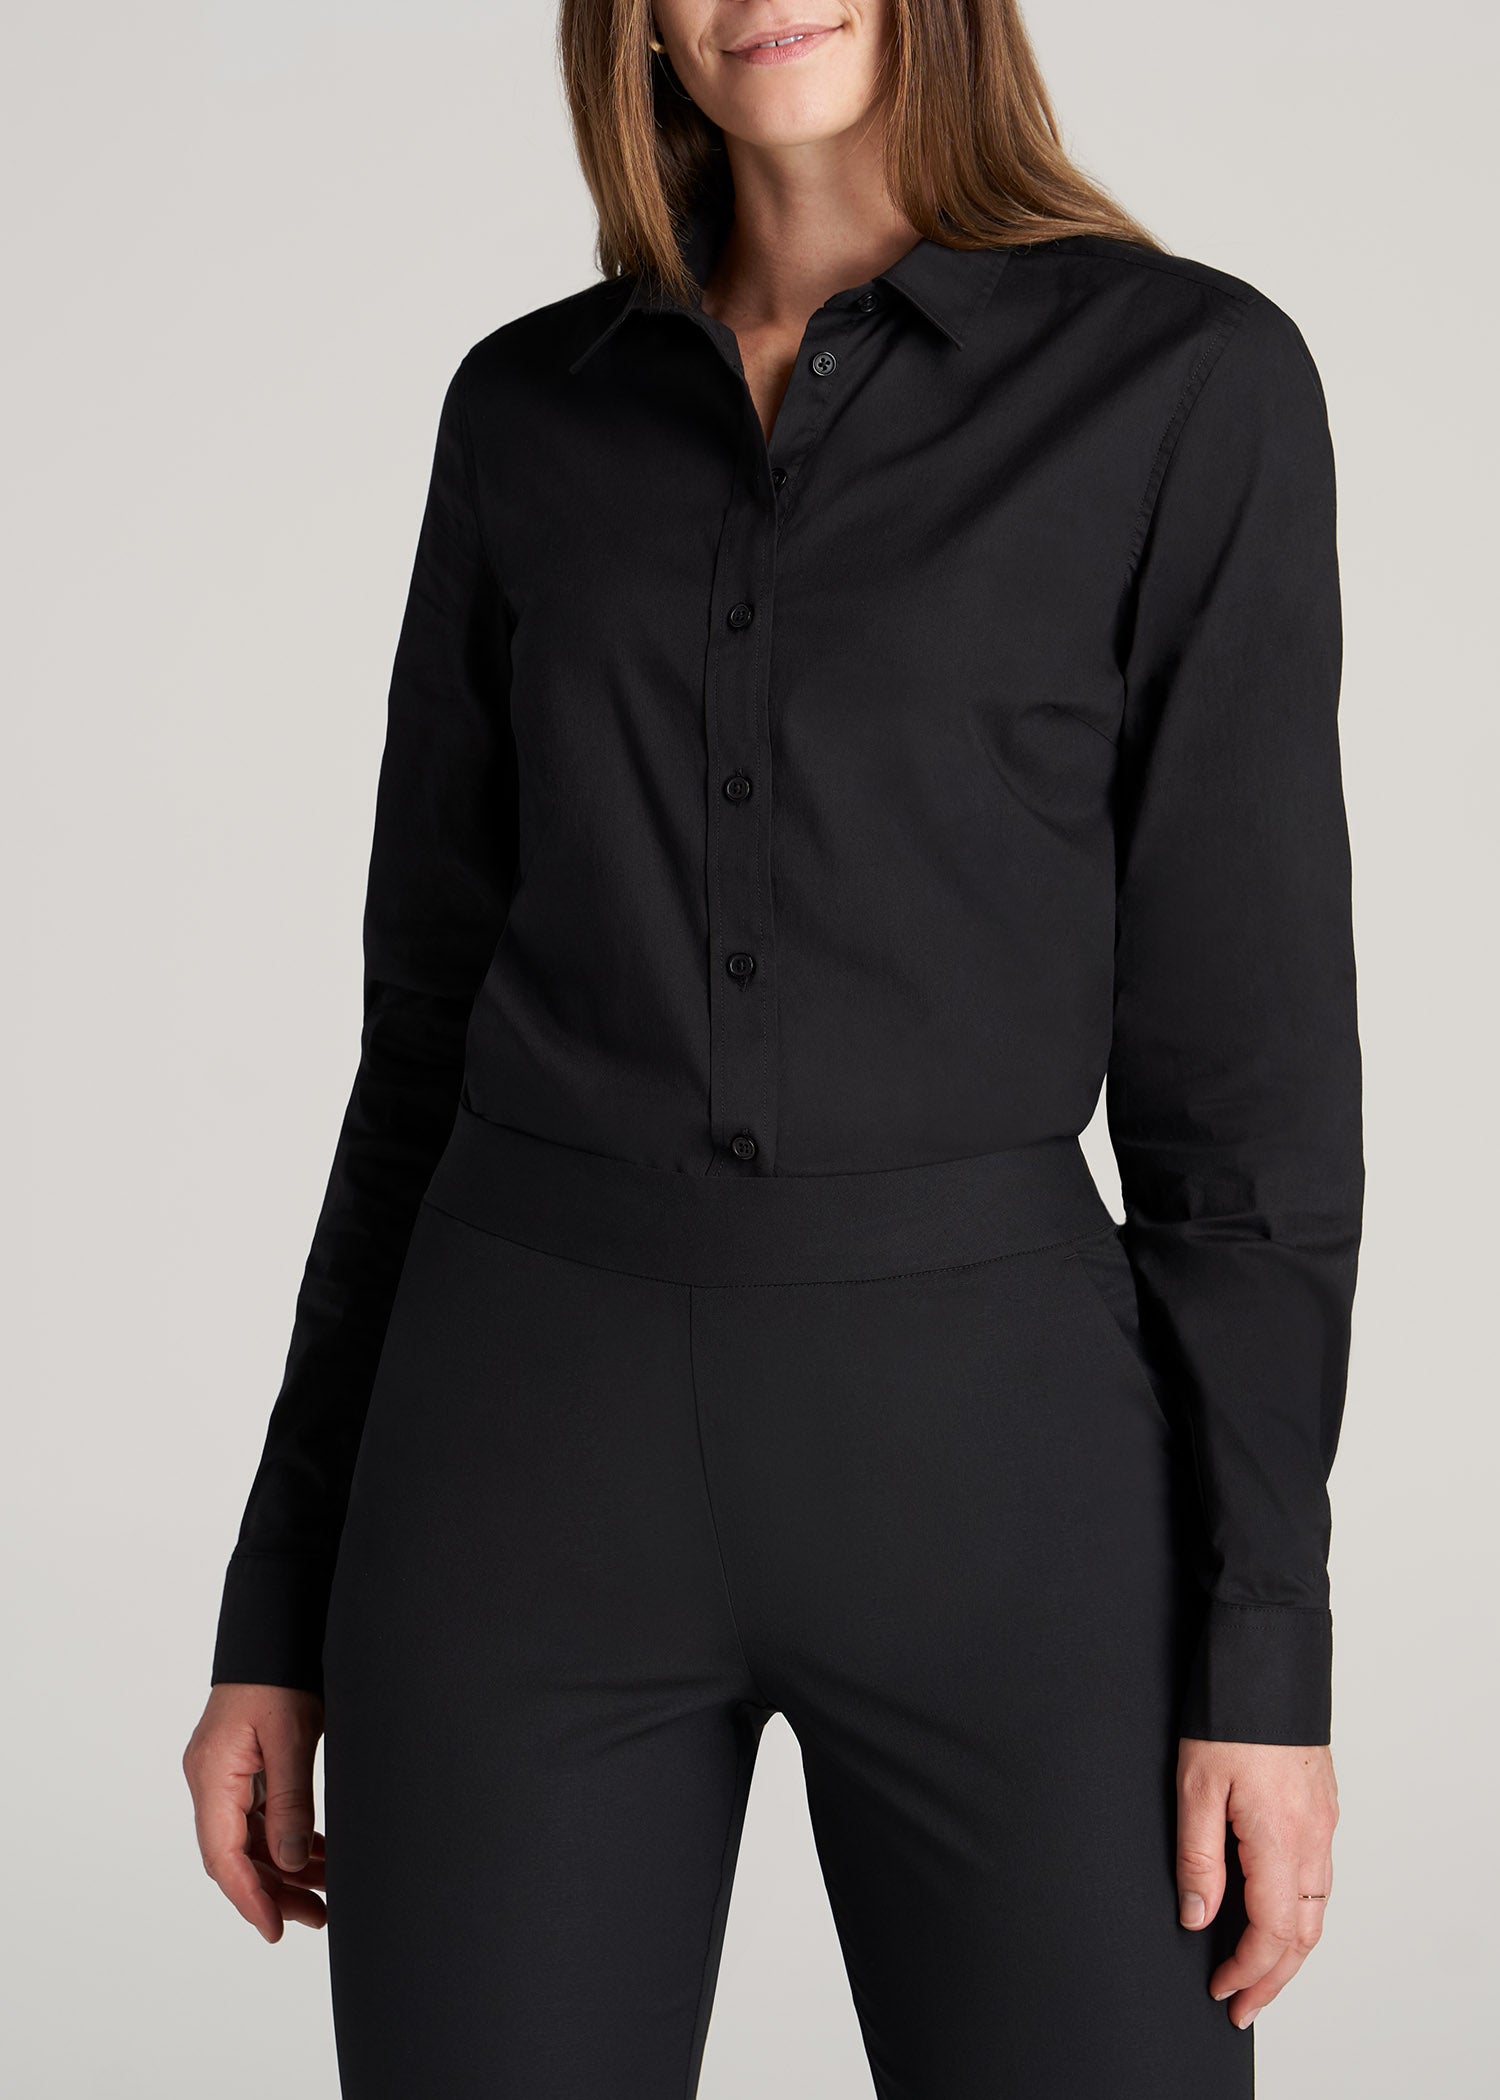 black dress shirt women